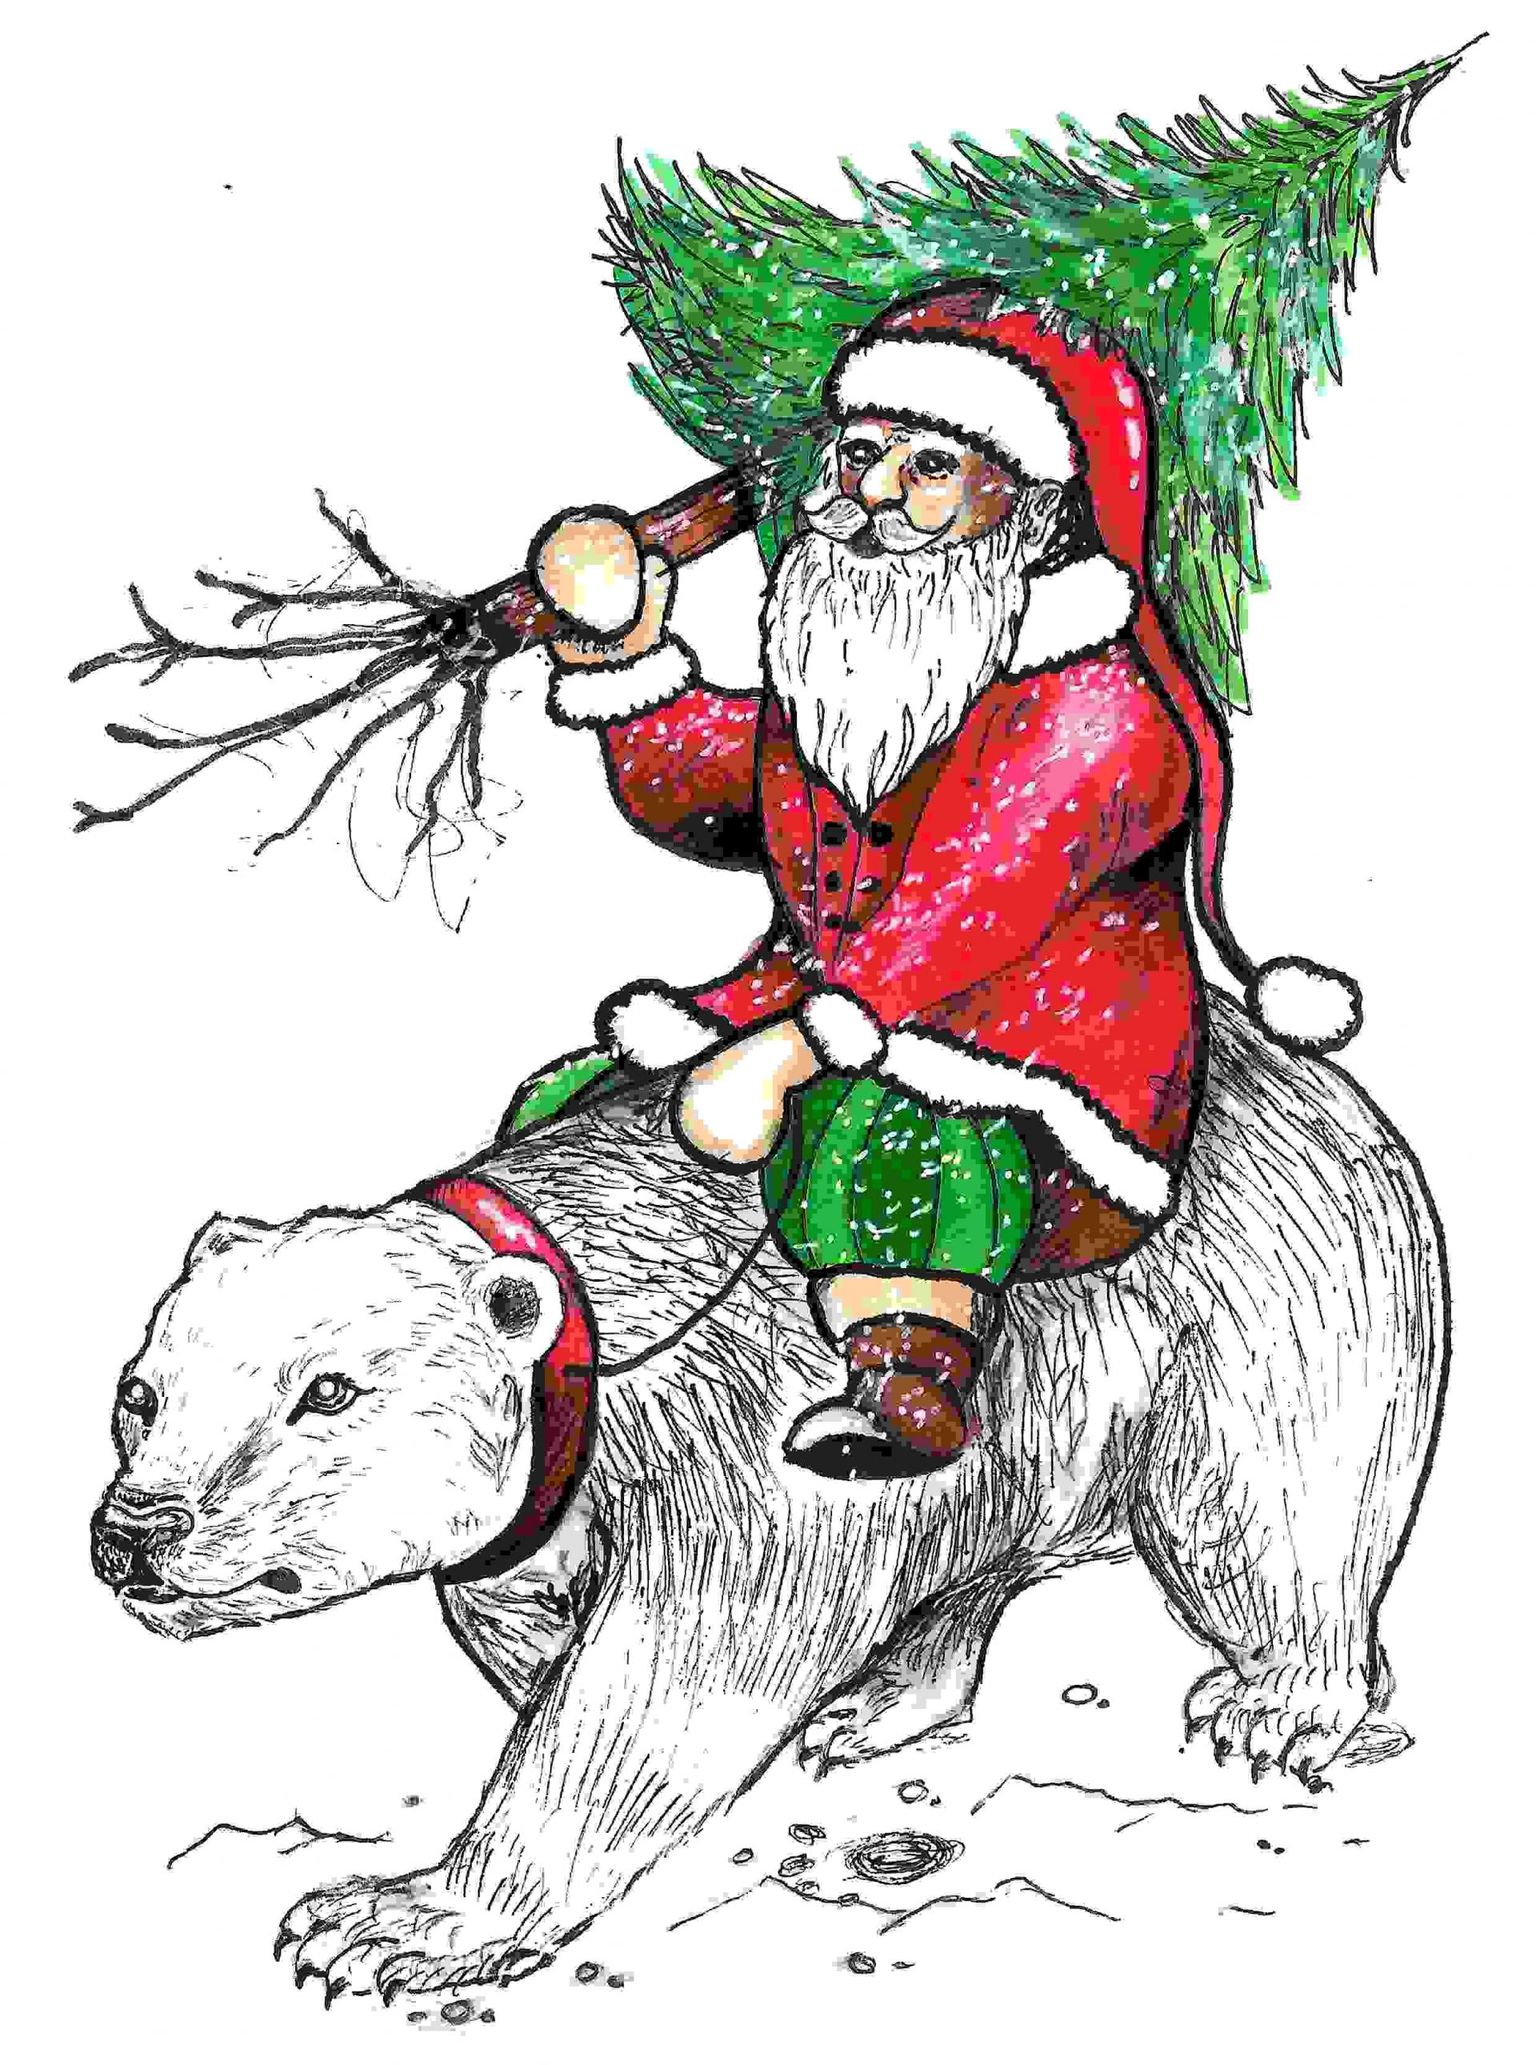 “Lähme toome lastele õiged jõulud, Alfie!” sõnab ta ja võtab jäämõmmikuga suuna Rovaniemi poole.